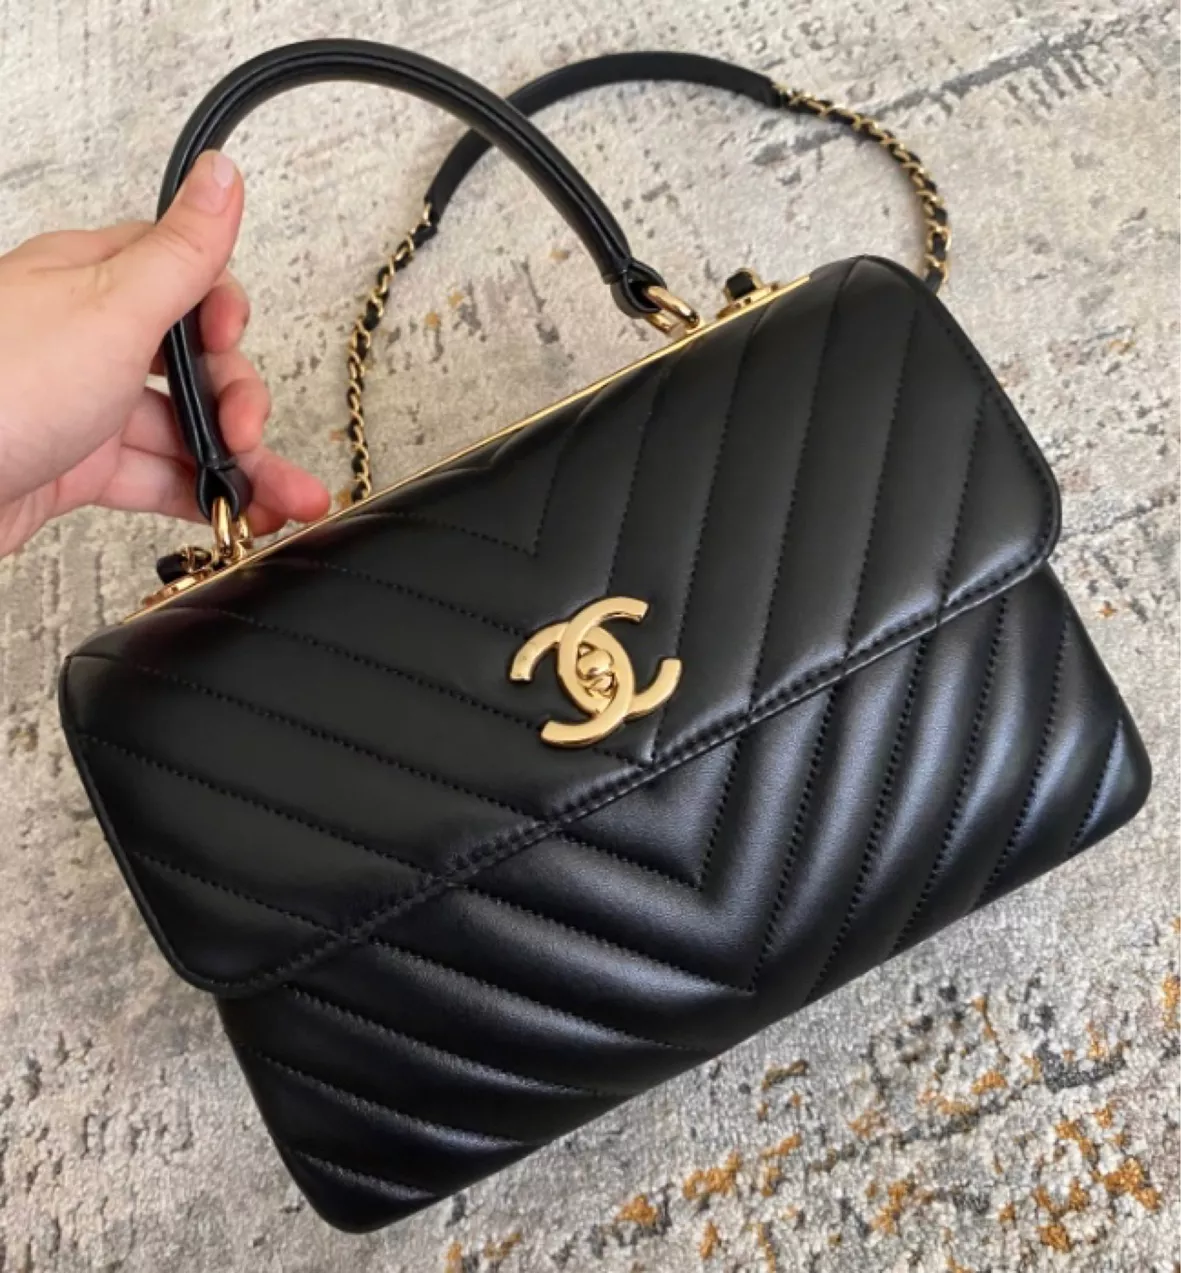 Vintage Chanel Shoulder Bag … curated on LTK